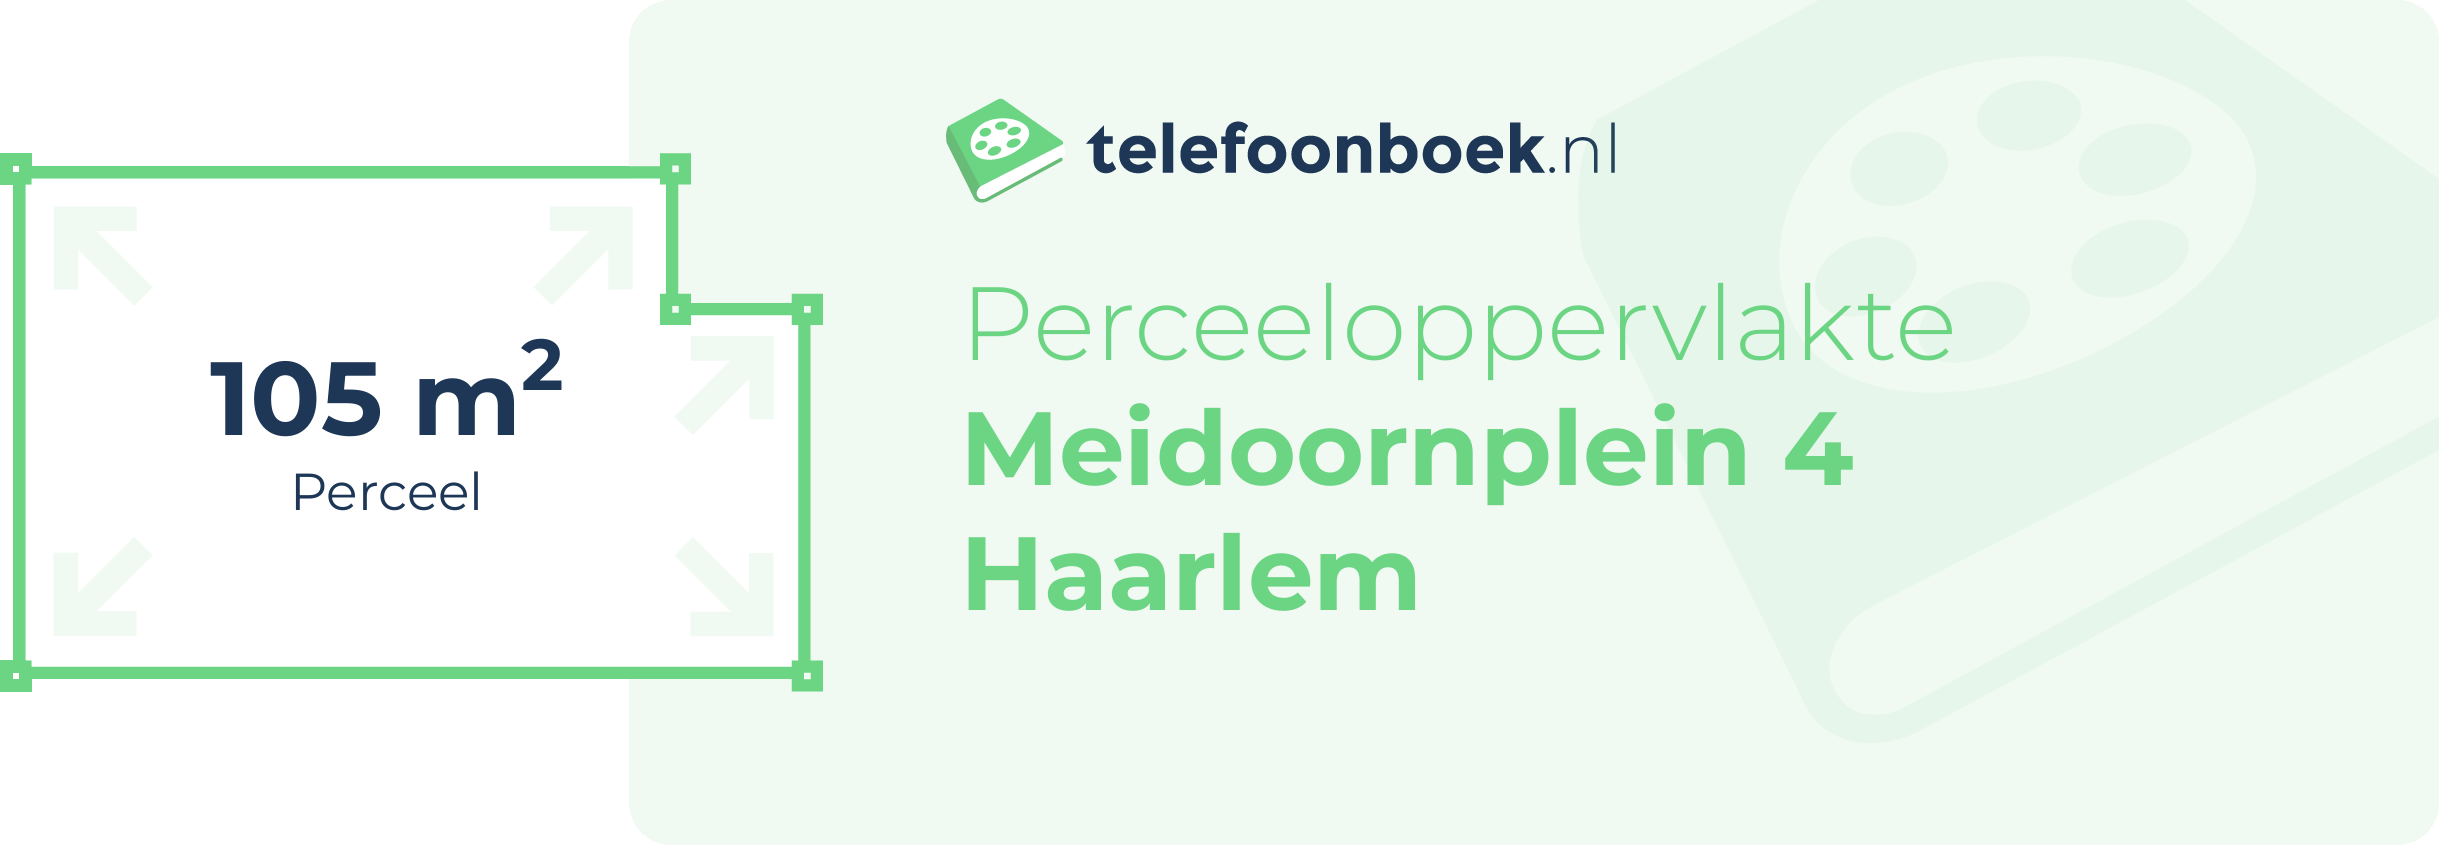 Perceeloppervlakte Meidoornplein 4 Haarlem